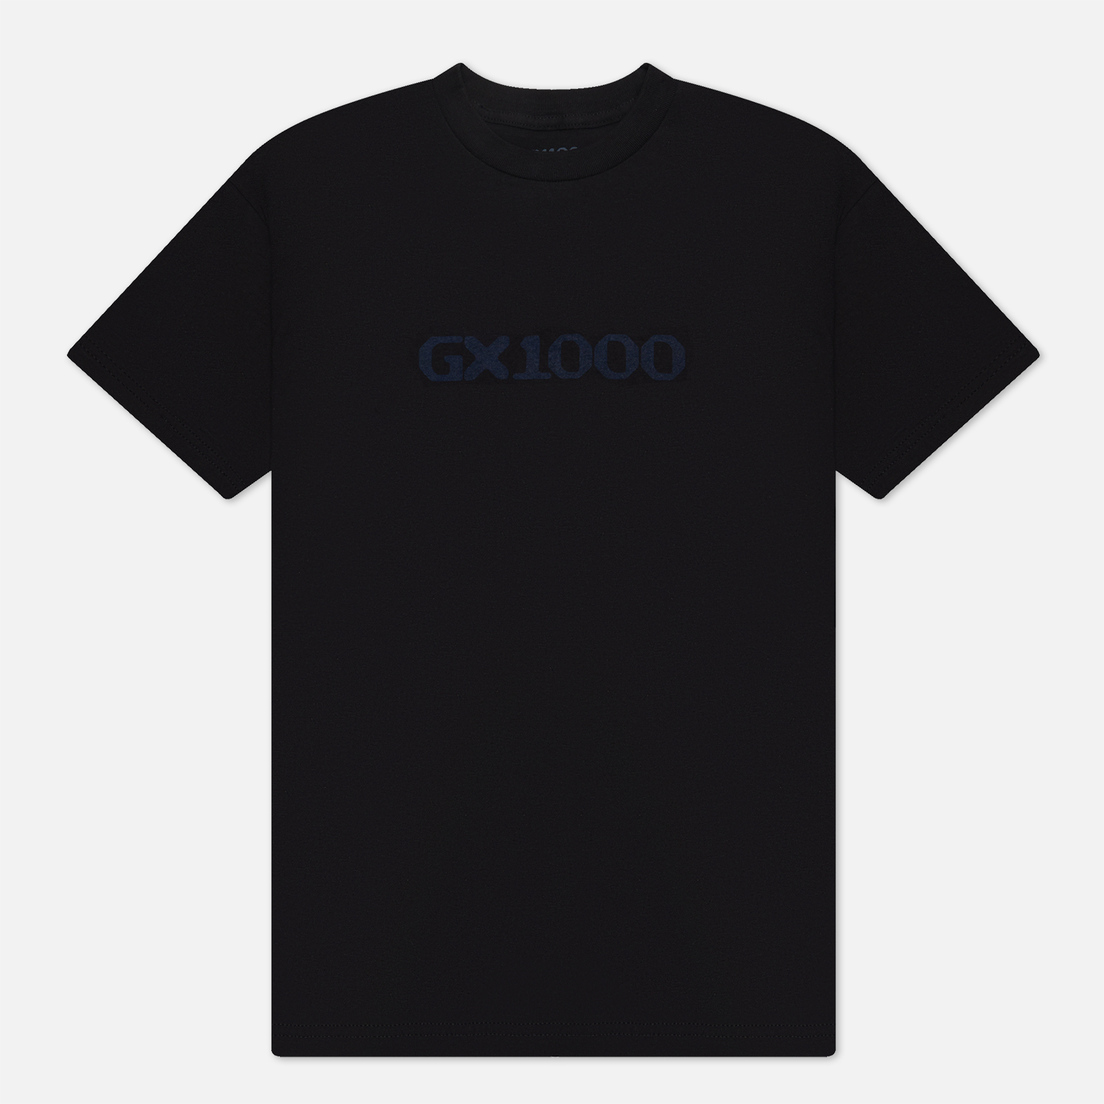 GX1000 Мужская футболка OG Logo